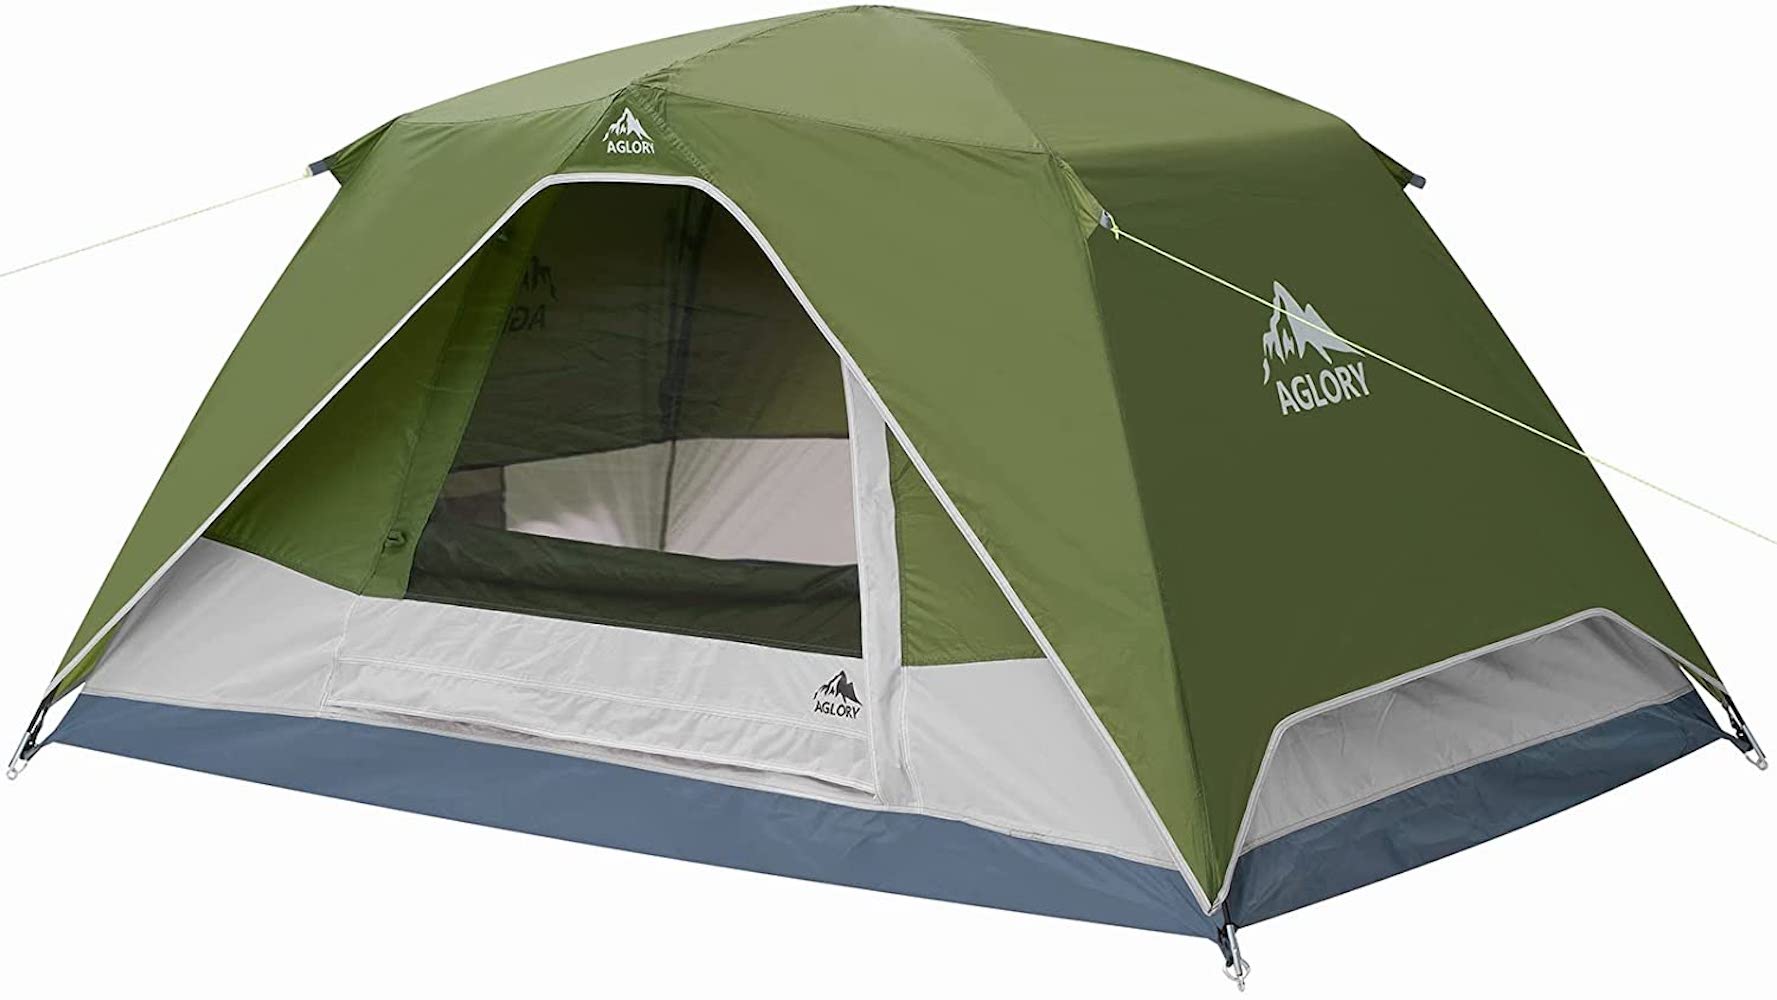 Algory tent